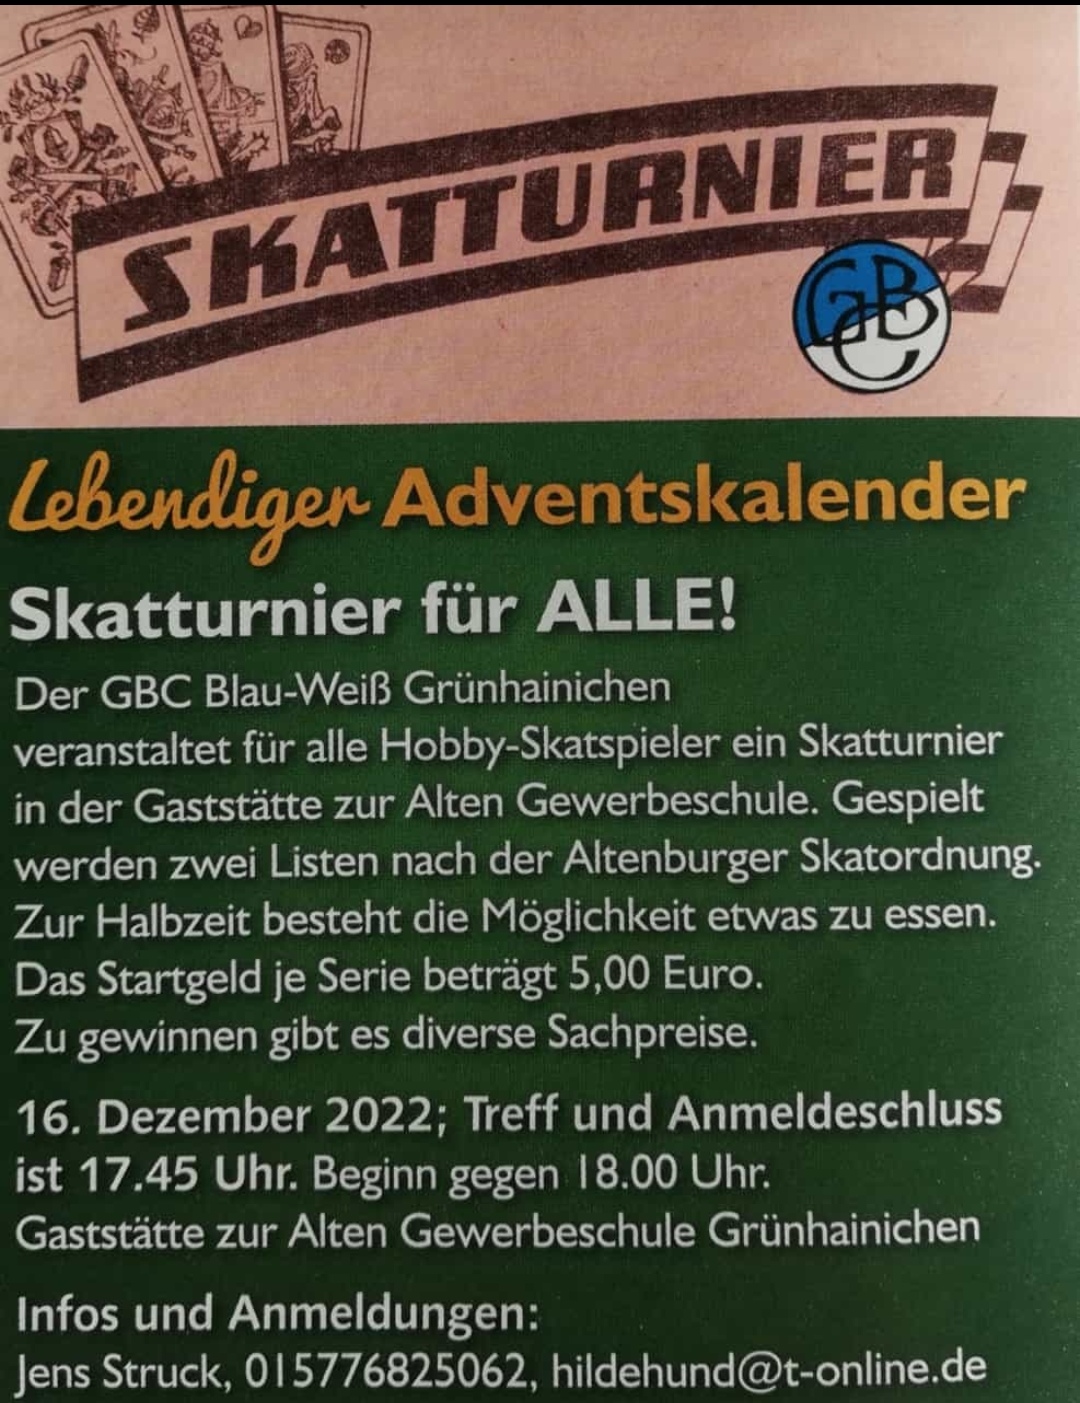 Lebendiger Adventskalender - Skatturnier in der Gaststätte "Alte Gewerbeschule" am 16.12.2022